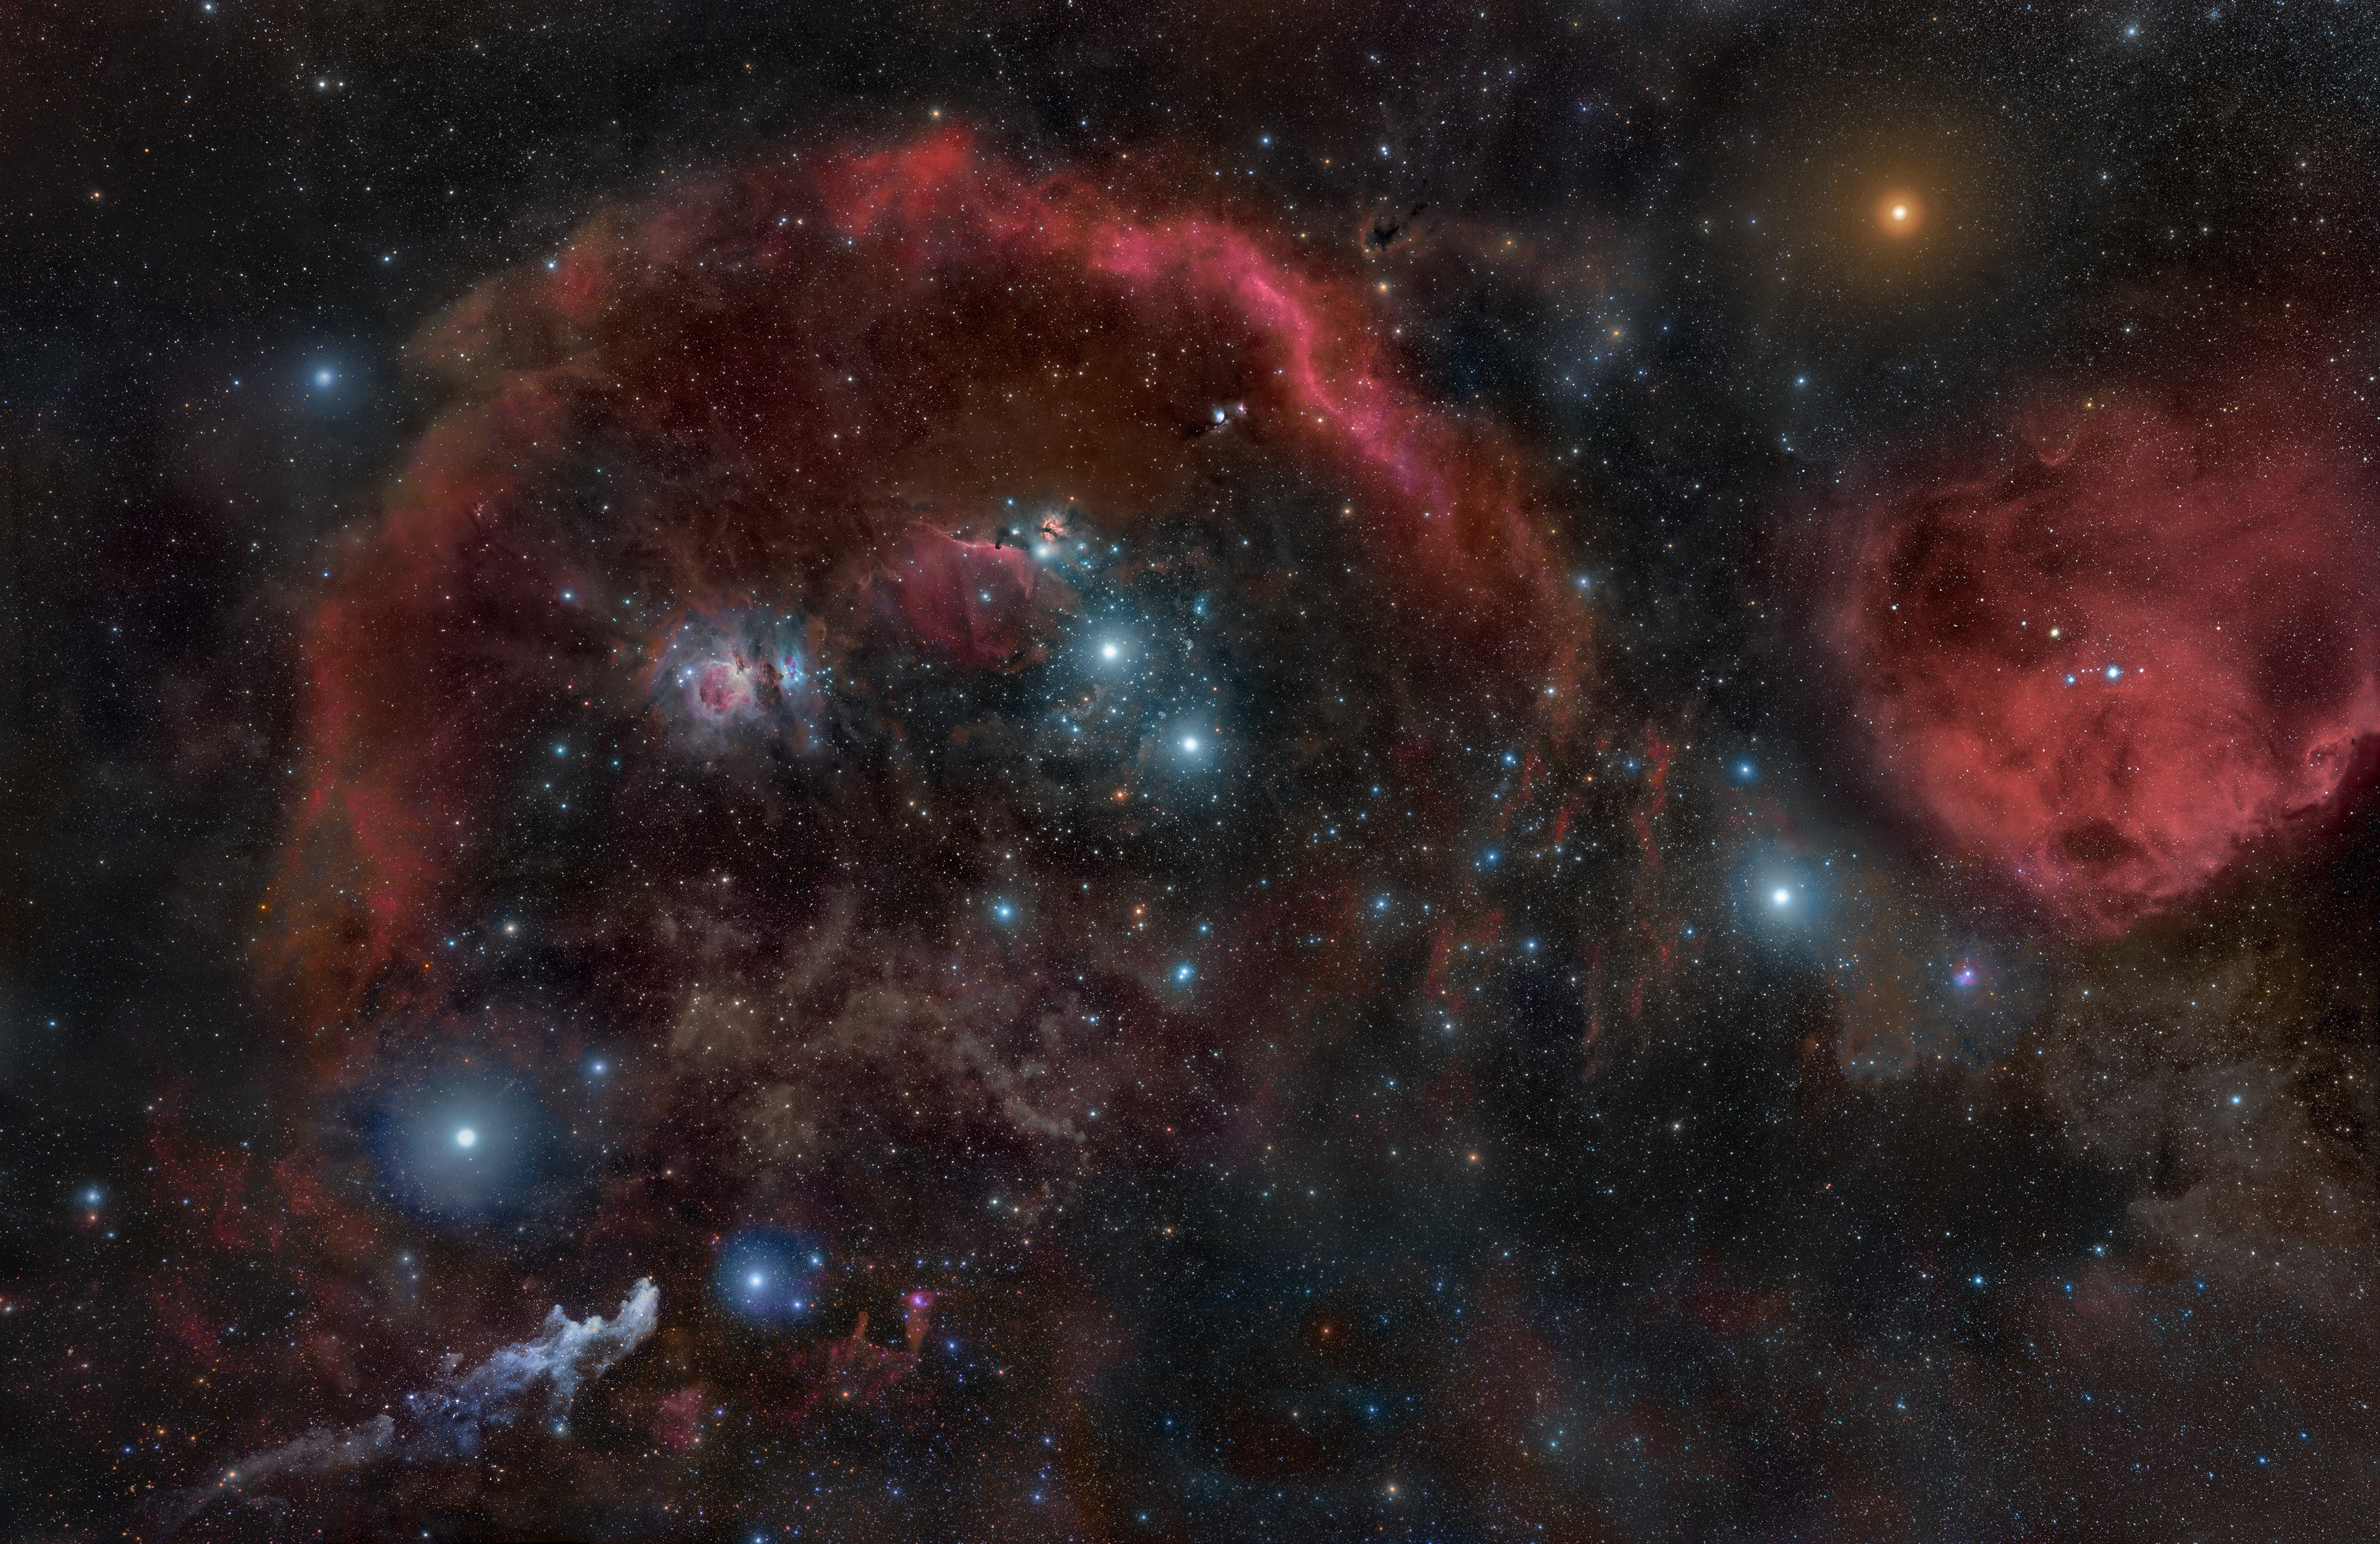 Созвездие Ориона, погруженное в комплекс эмиссионных и отражательных туманностей  